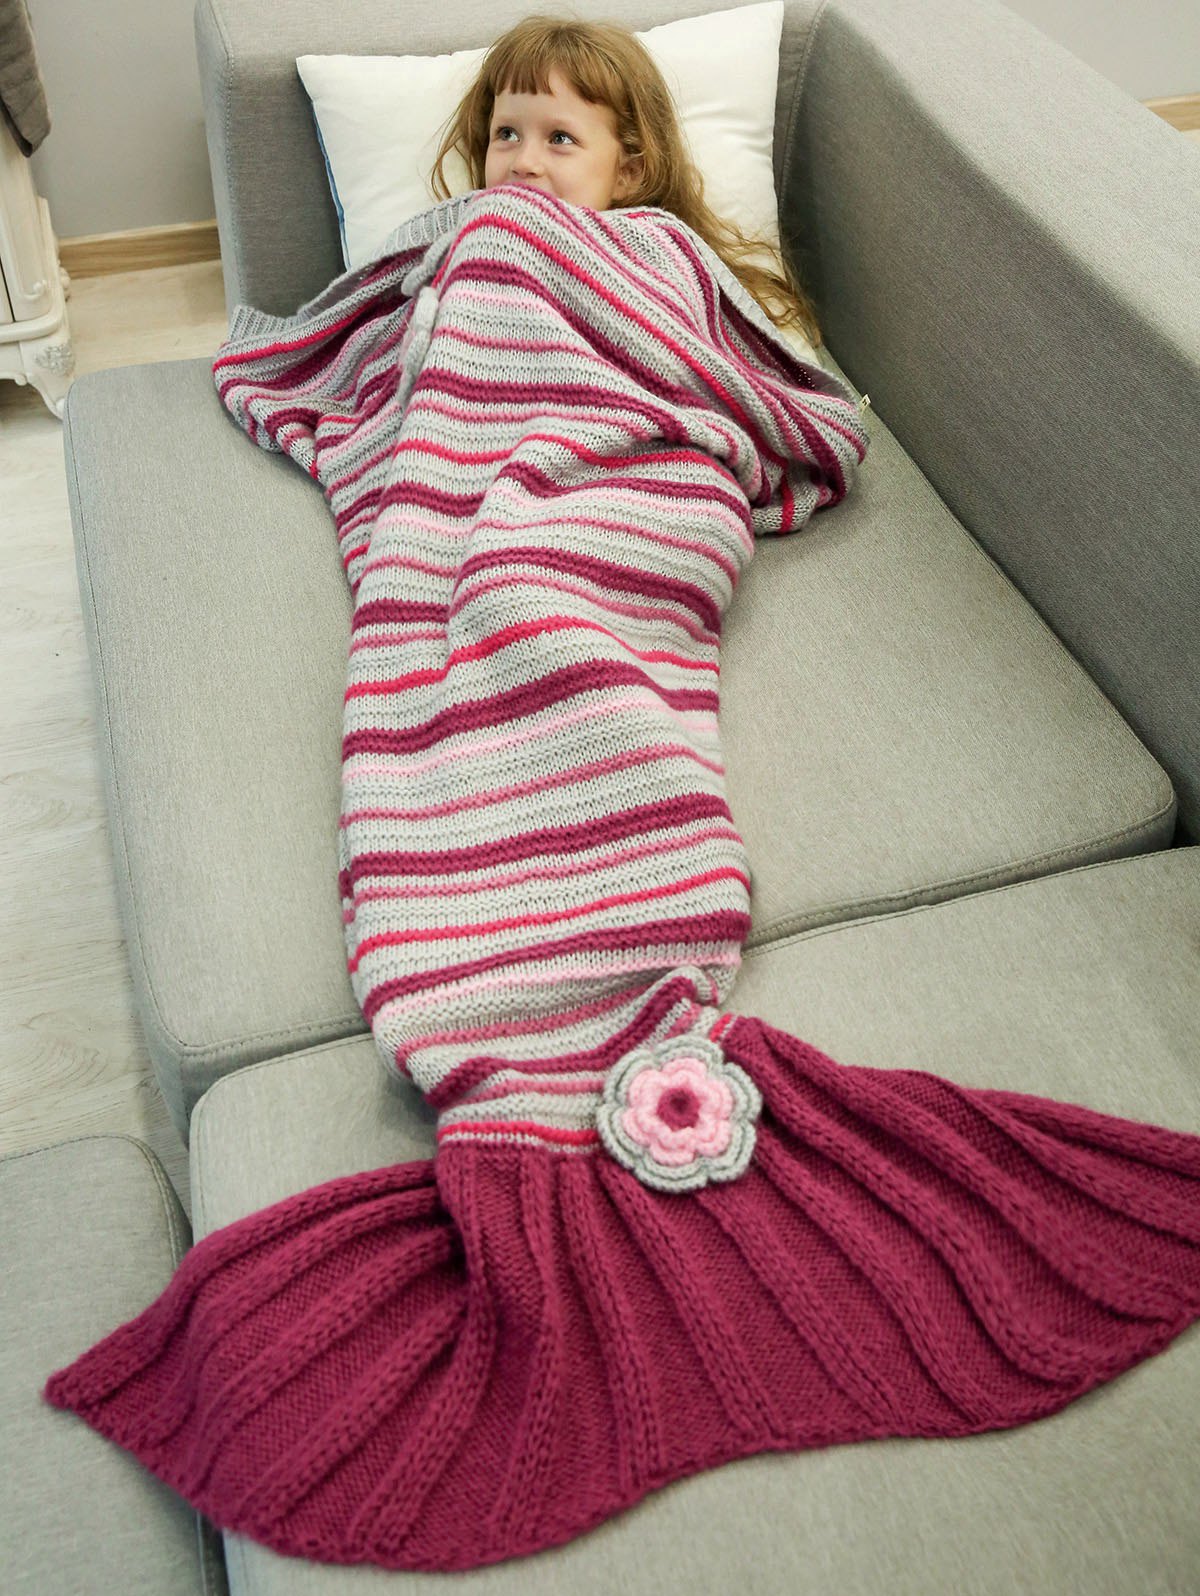 Mermaid Blankets - Cute or Weird ? 